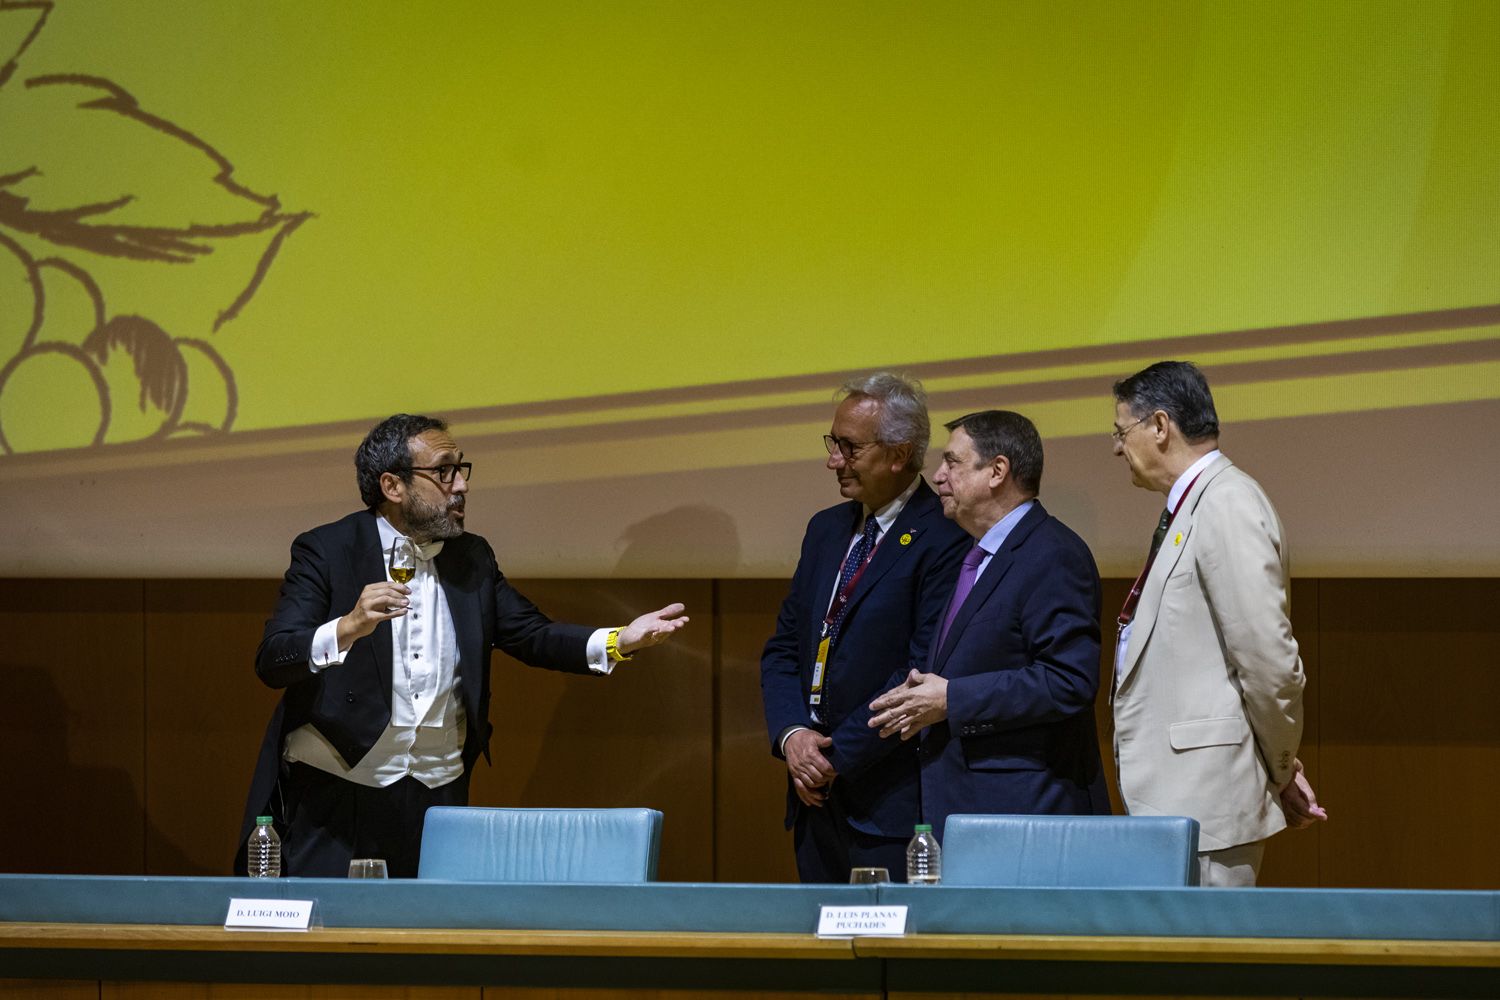 El presentador brinda con una copa de palo cortado ante Luigi Moio, Luis Planas y Pau Roca.